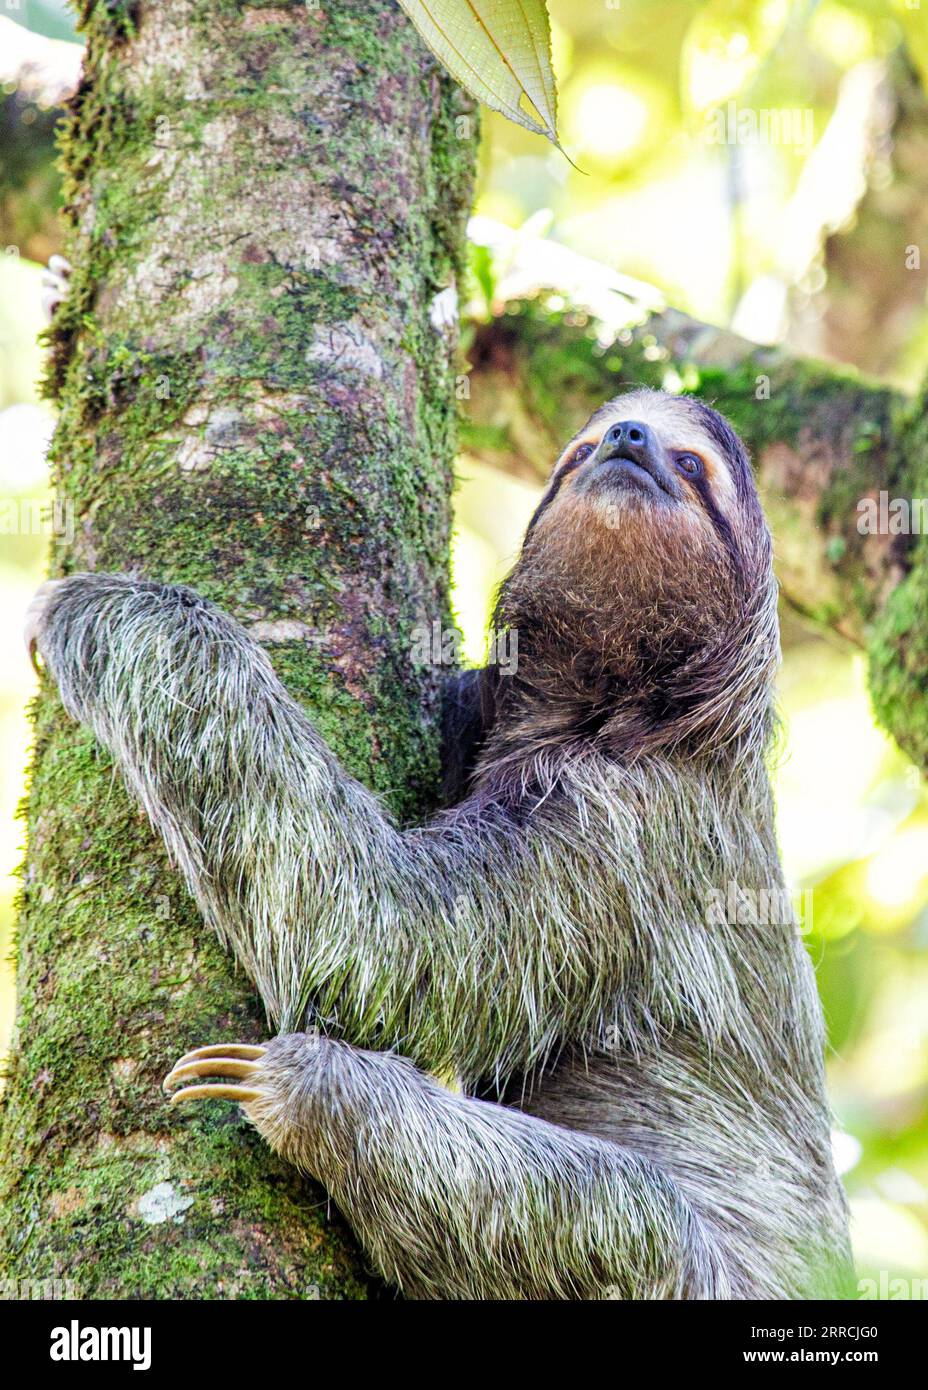 Entdecken Sie die entzückende dreizehige Faultiere aus Costa Ricas üppigen Regenwäldern. Der langsame Charme zieht alle in seinen Bann. Stockfoto